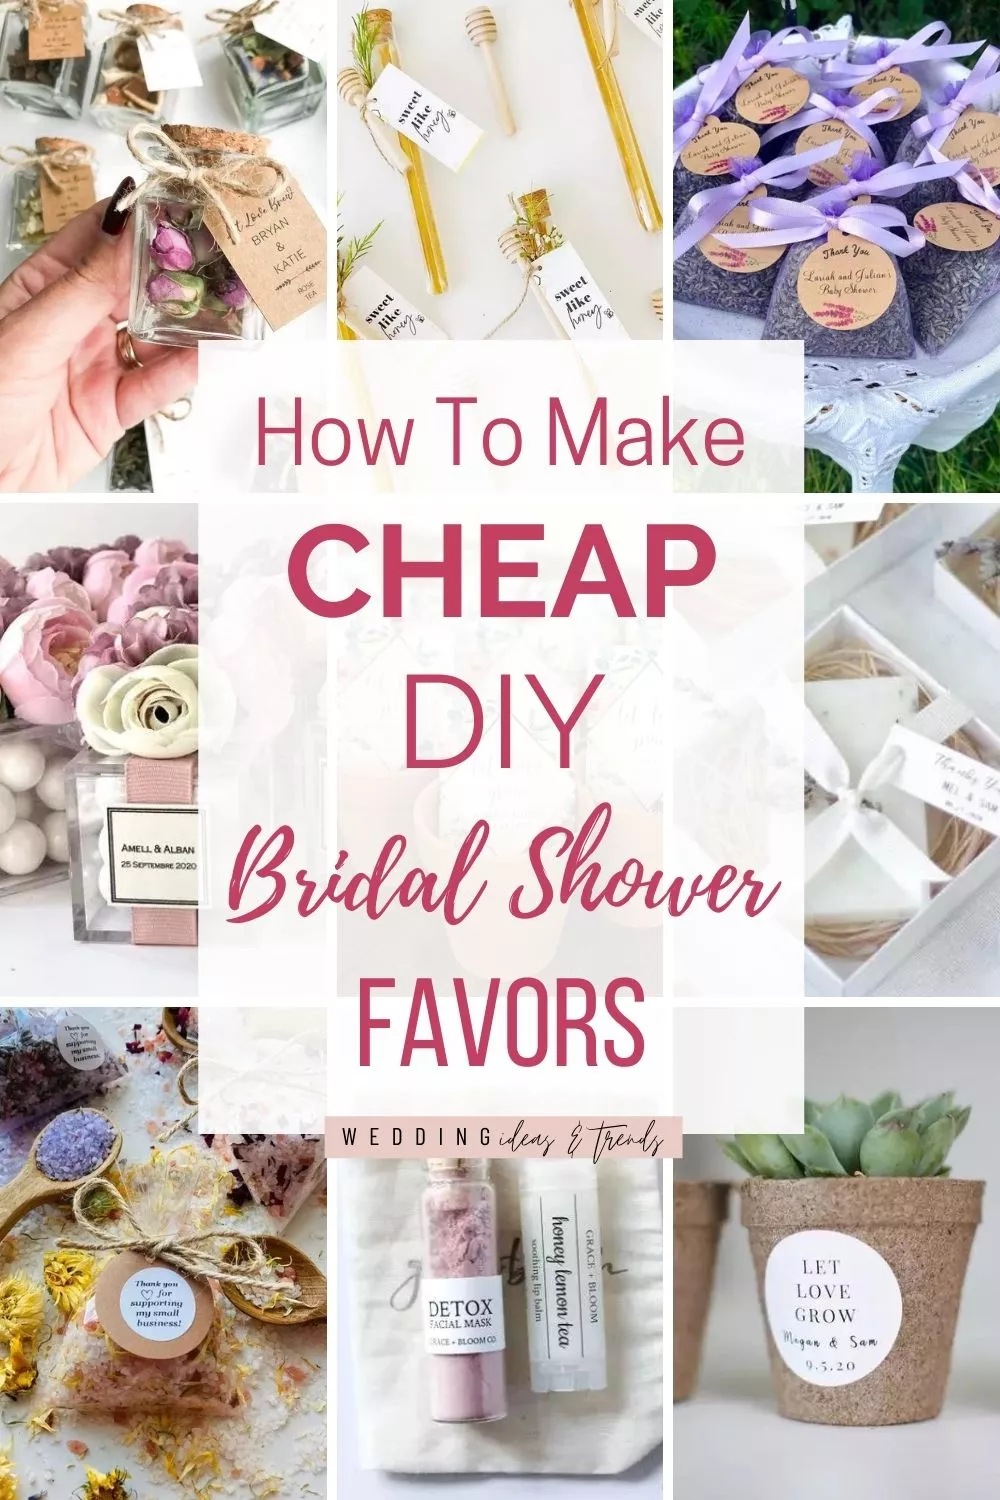 The Most Creative #BridalShower Ideas We Found on Instagram